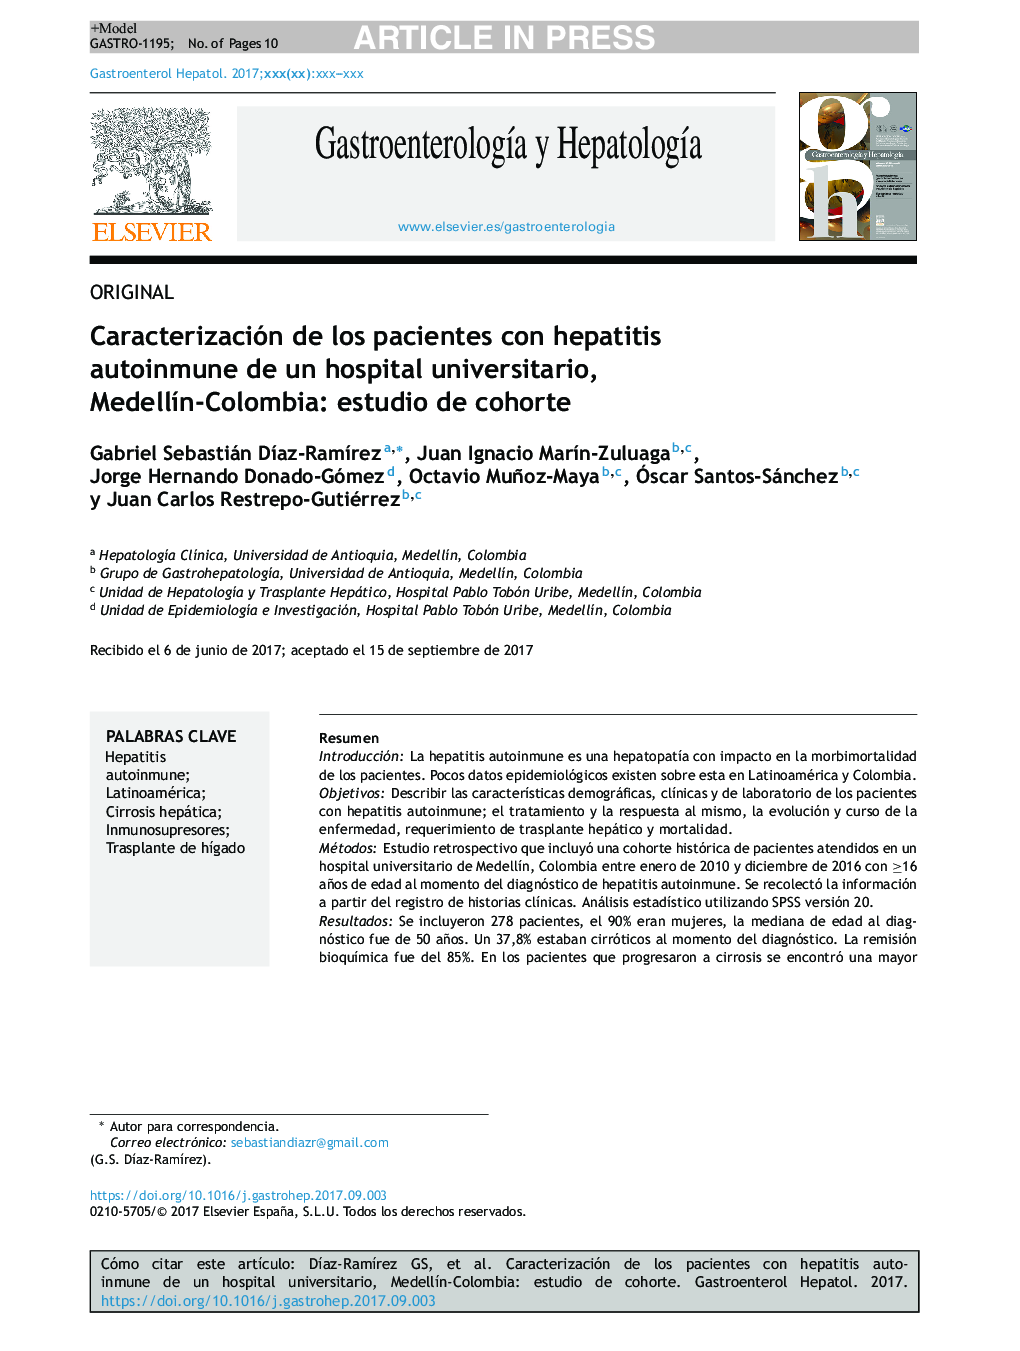 Caracterización de los pacientes con hepatitis autoinmune de un hospital universitario, MedellÃ­n-Colombia: estudio de cohorte